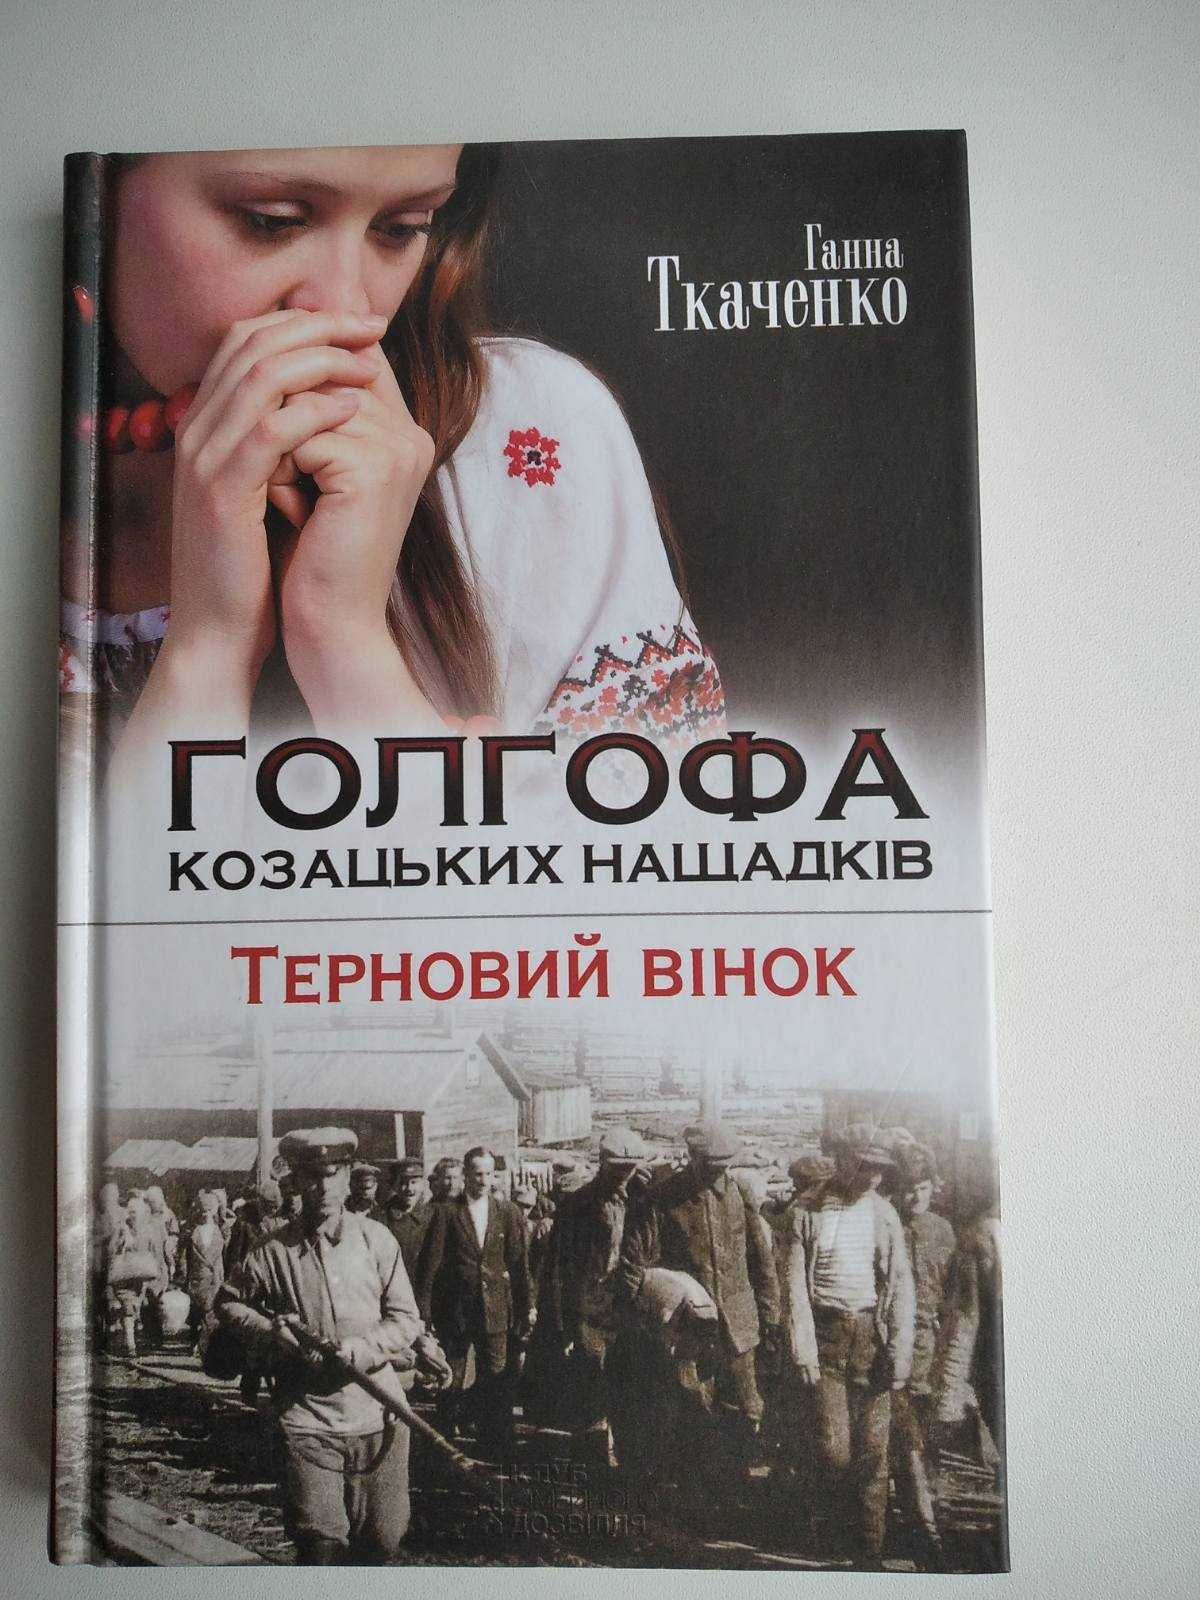 Ганна Ткаченко "Голгофа козацьких нащадків. Терновий вінок" - романи.